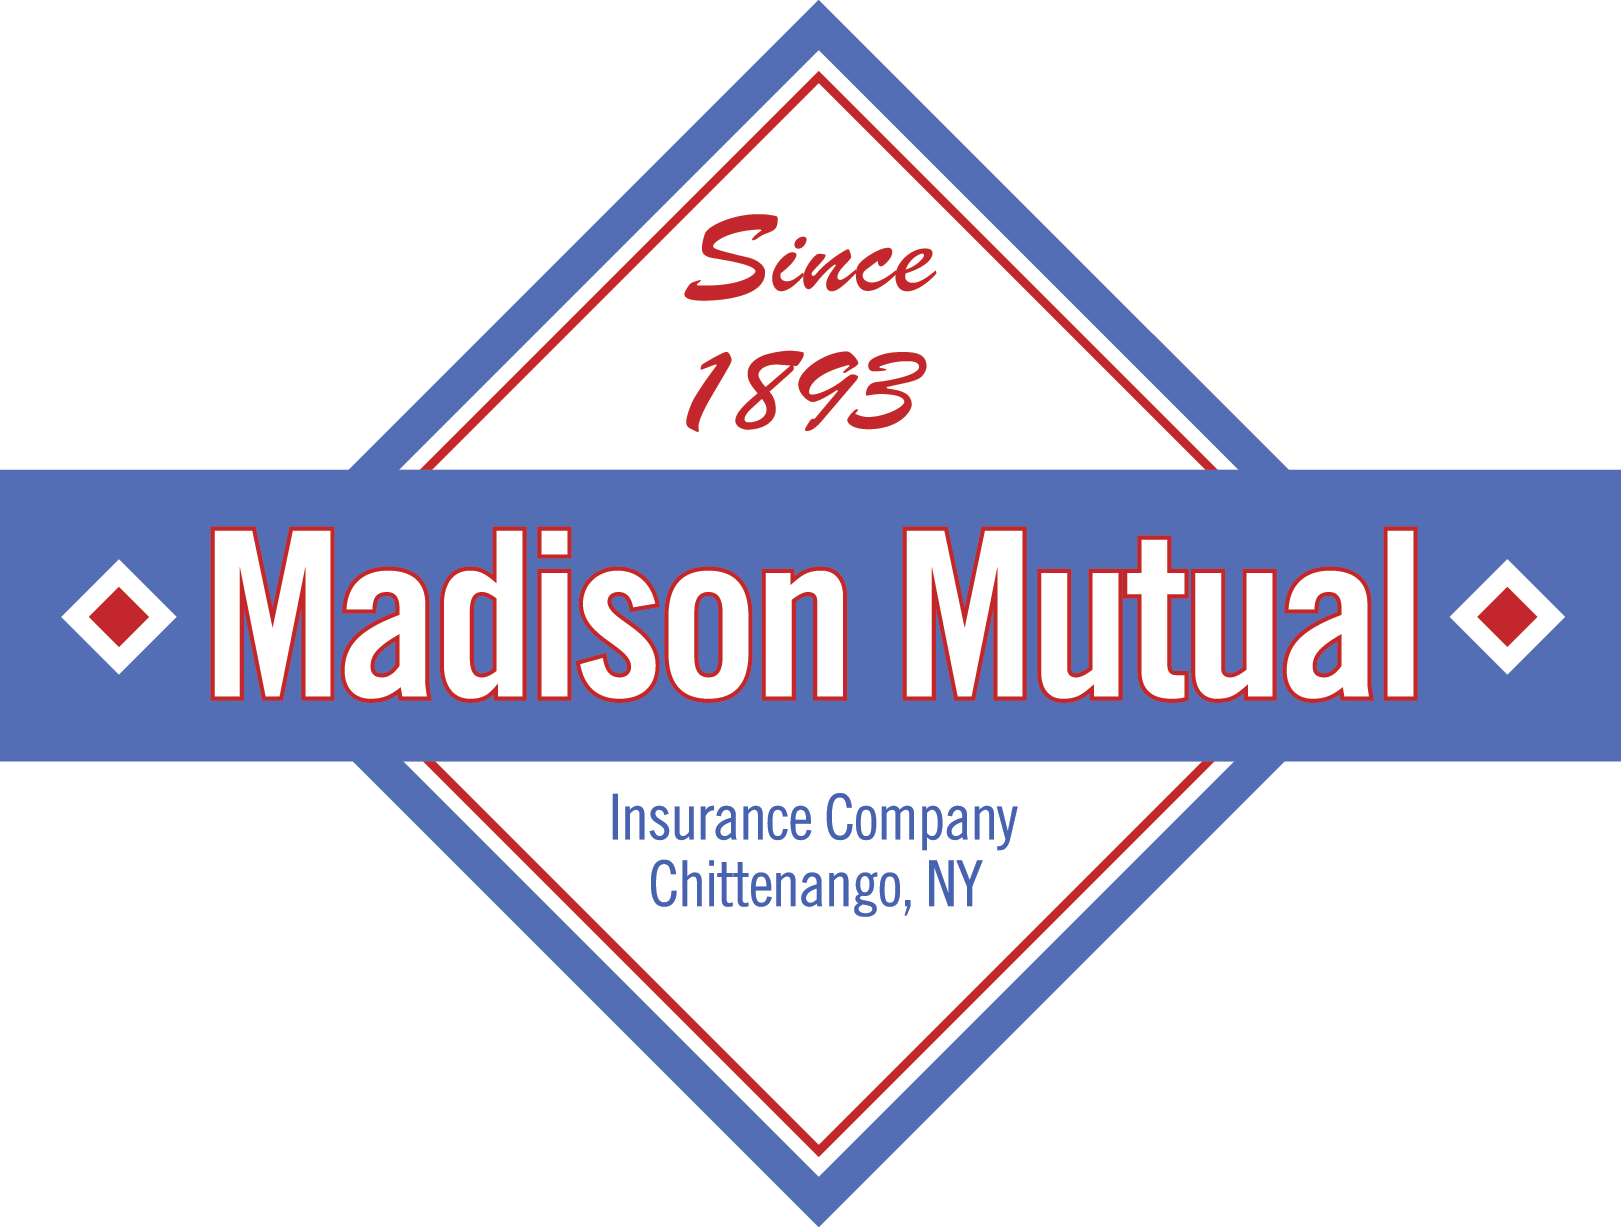 Madison Mutual Insurance Company near madison county ny